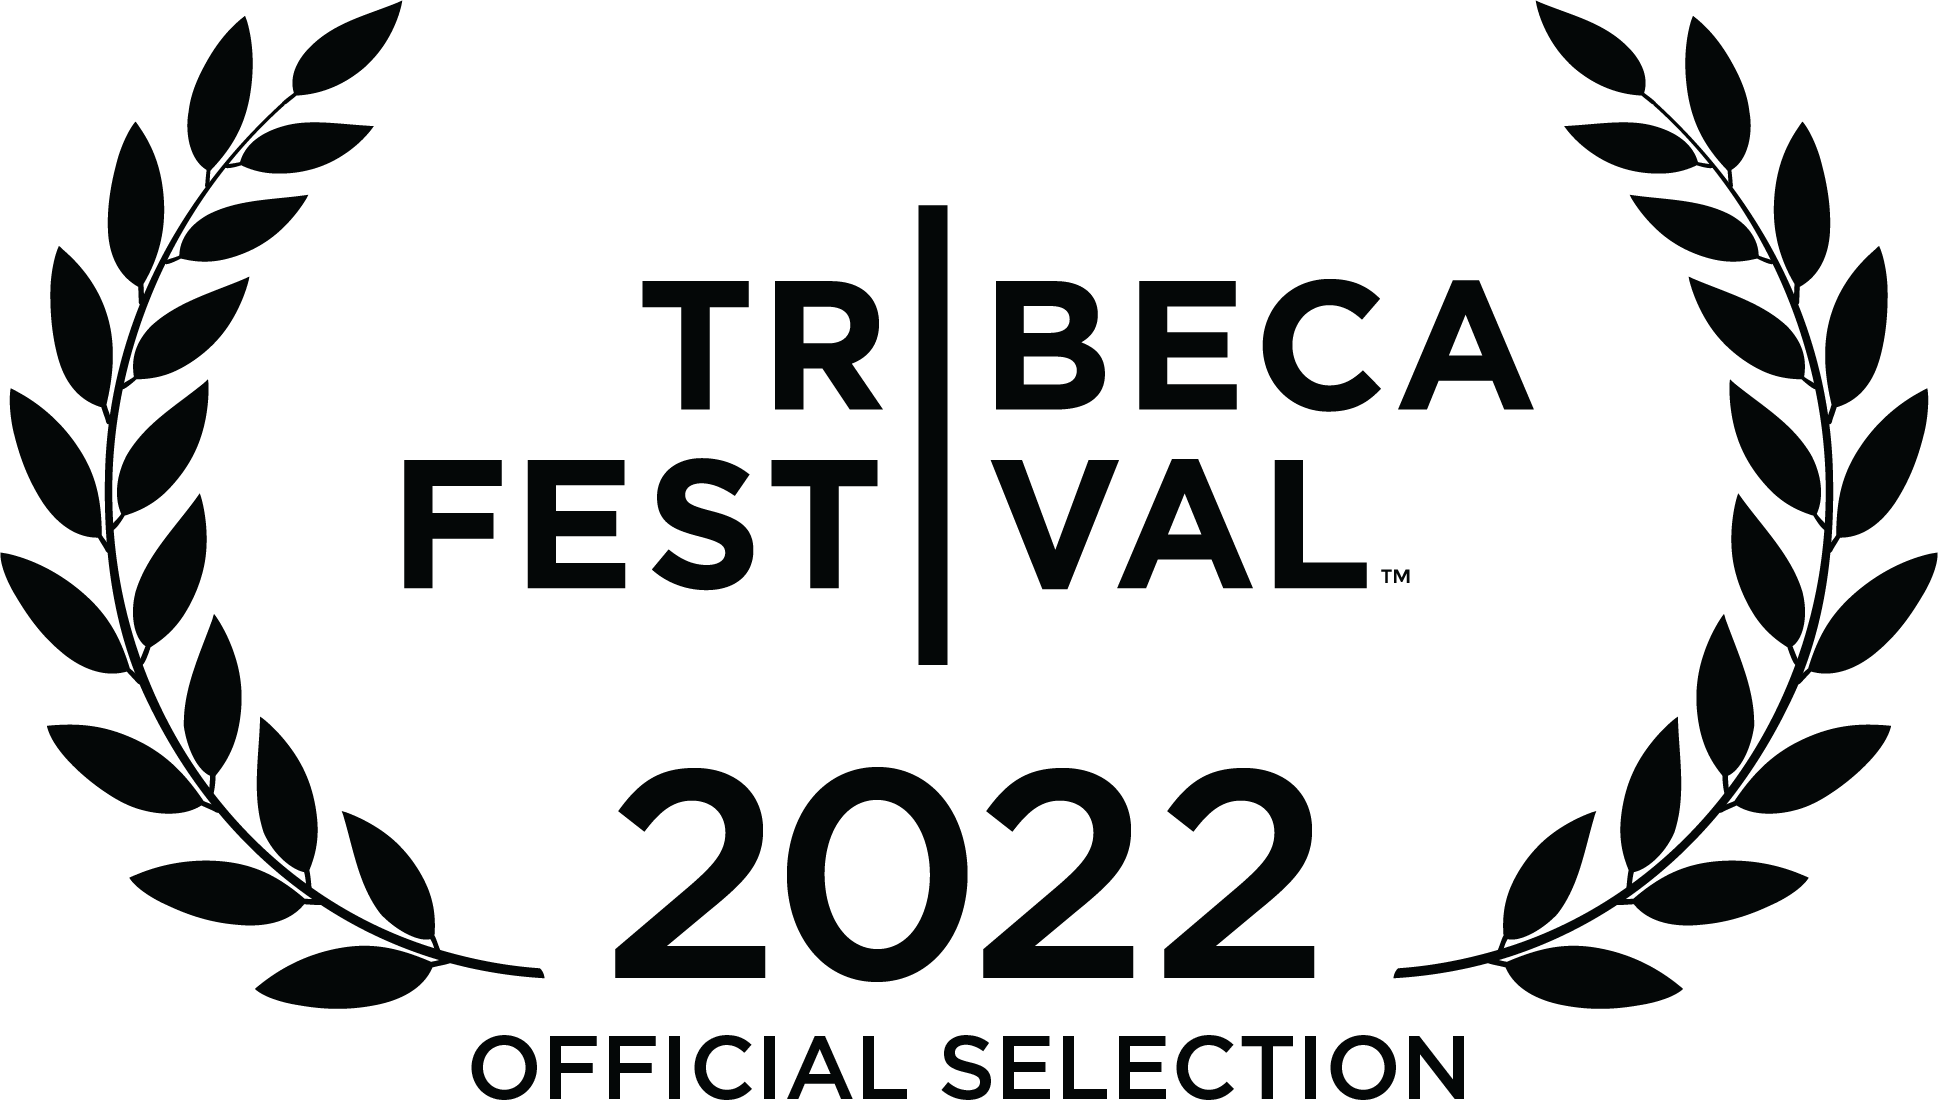 Tribeca 2022